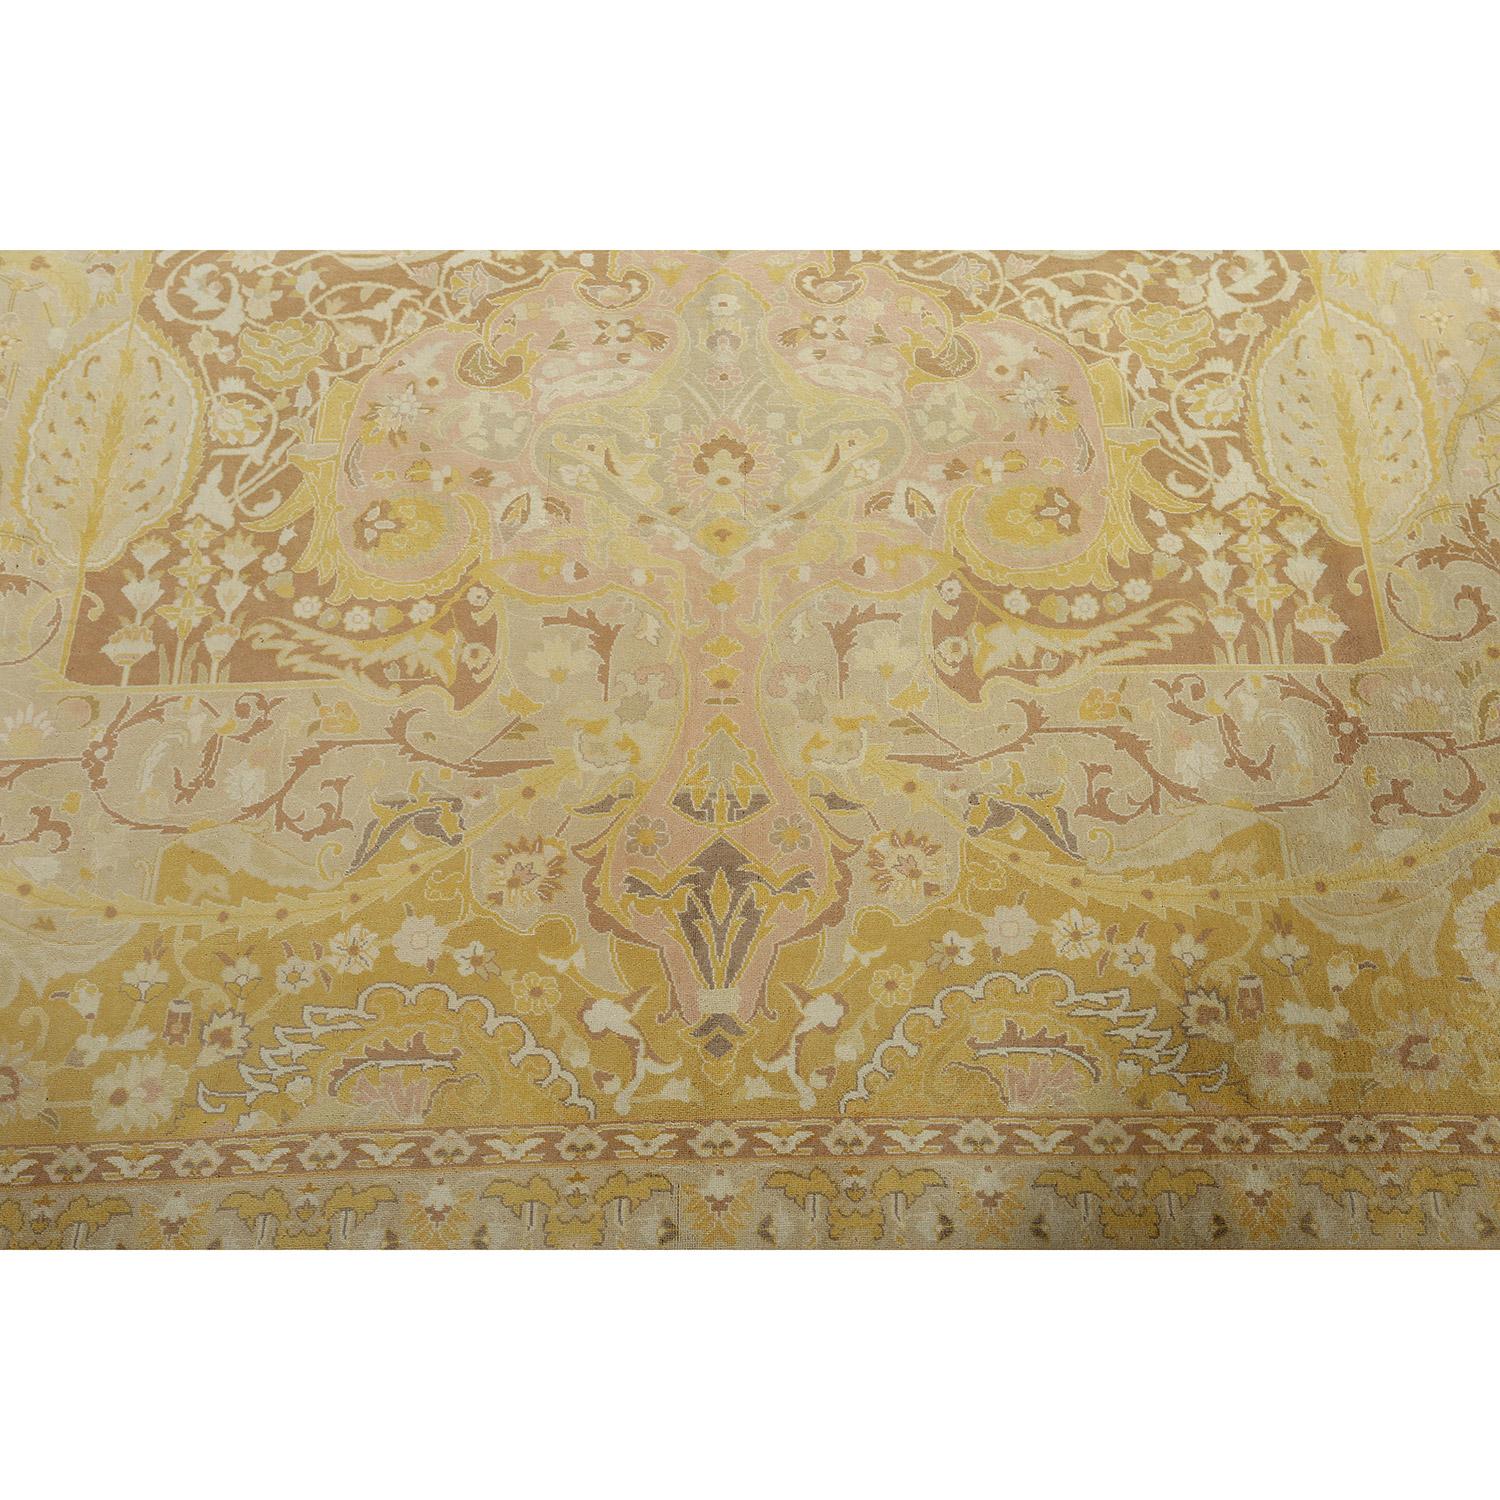 Dieser Vintage-Teppich aus Täbris, der von dem berühmten Weber Javan Amir Khiz hergestellt wurde, ist ein wahres Zeugnis für die Meisterschaft der persischen Teppichherstellung. Jeder Knoten und jedes Detail spiegelt das außergewöhnliche Können und